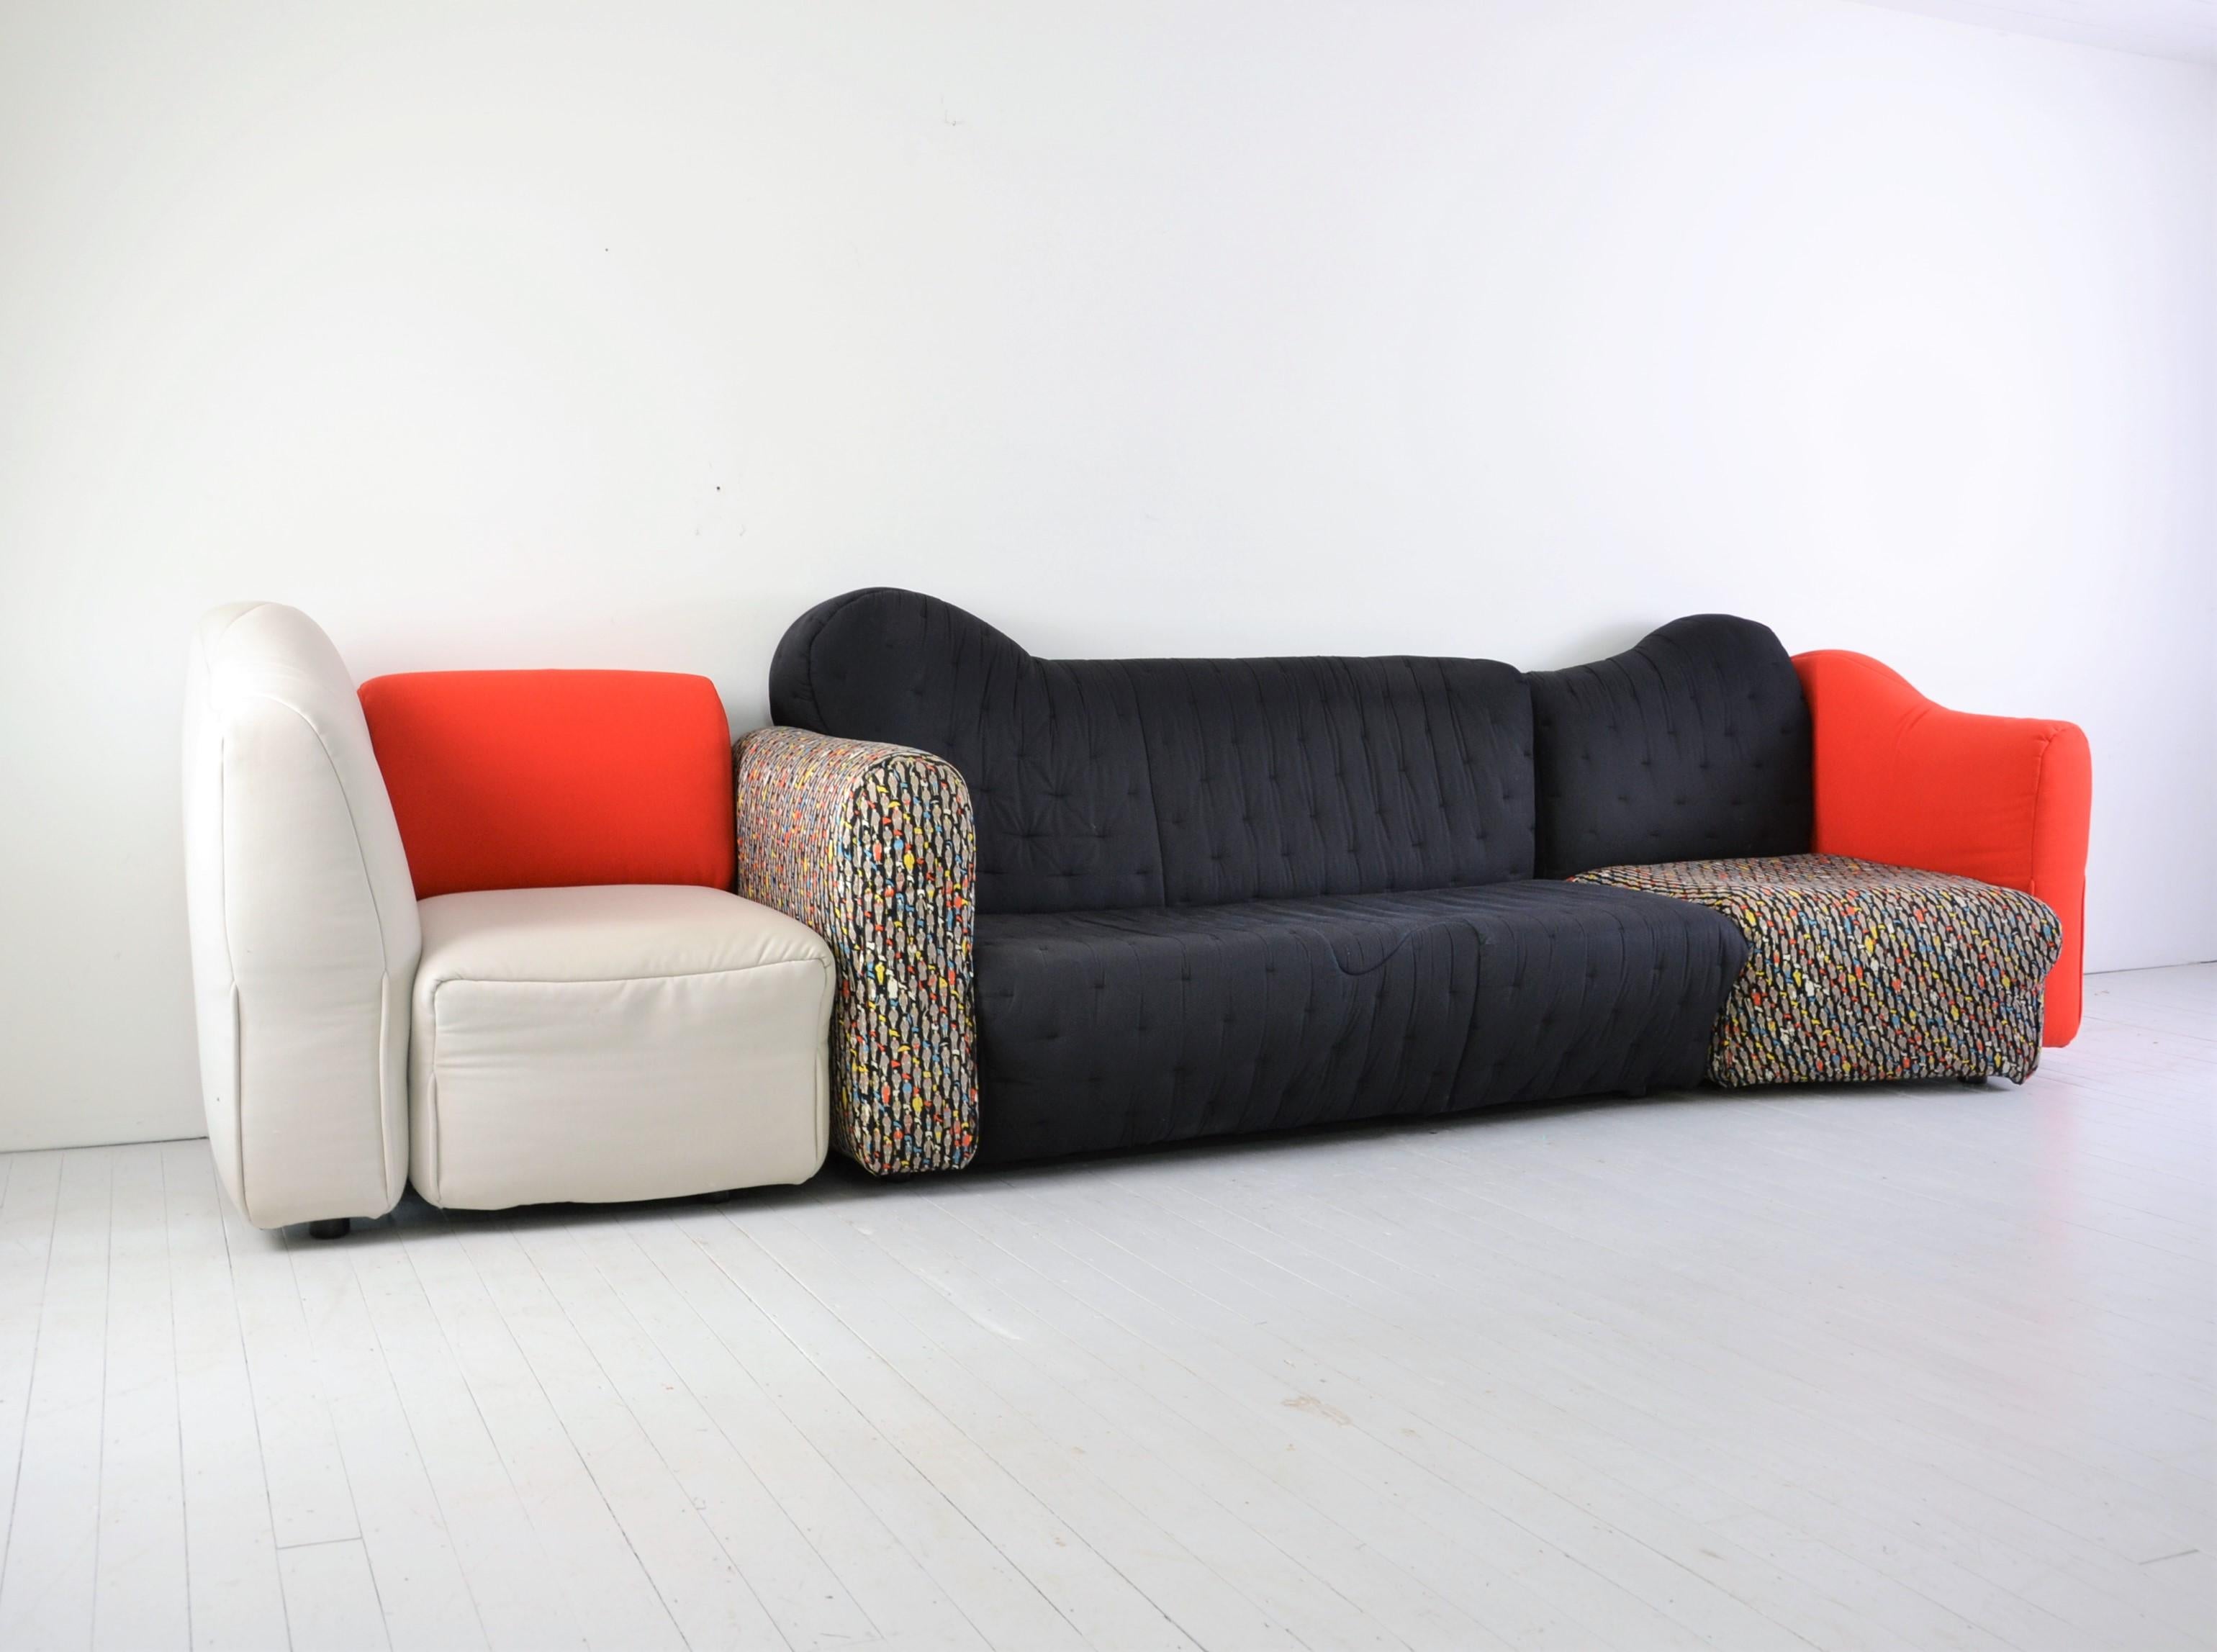 Merveilleux canapé modulaire de Geatano Pesce dans un état merveilleux et dans un tissu d'édition spéciale (motif).